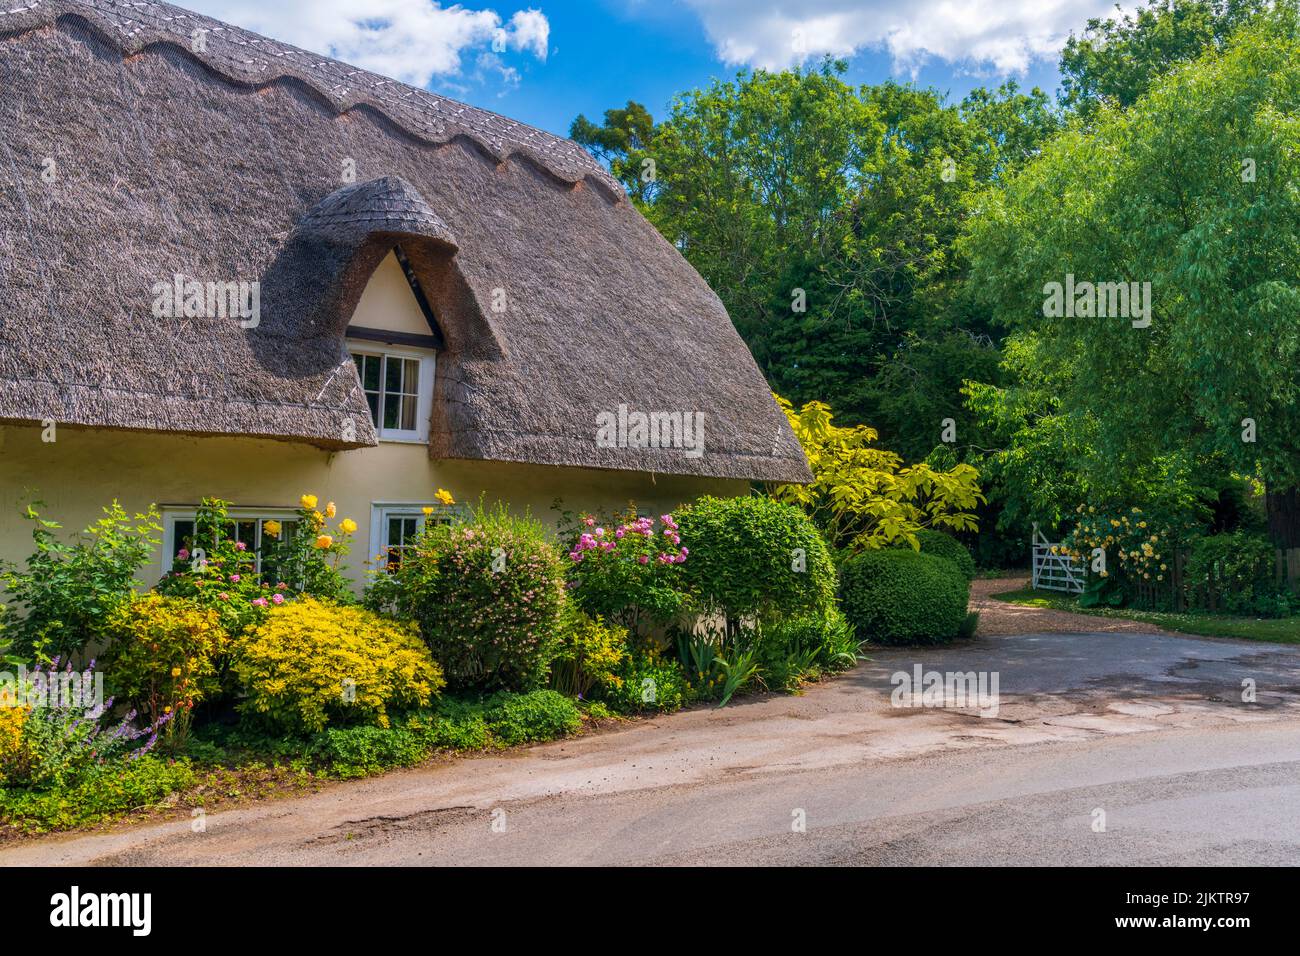 UK, England, Cambridgeshire, Wennington, Traditional thatched cottage Stock Photo